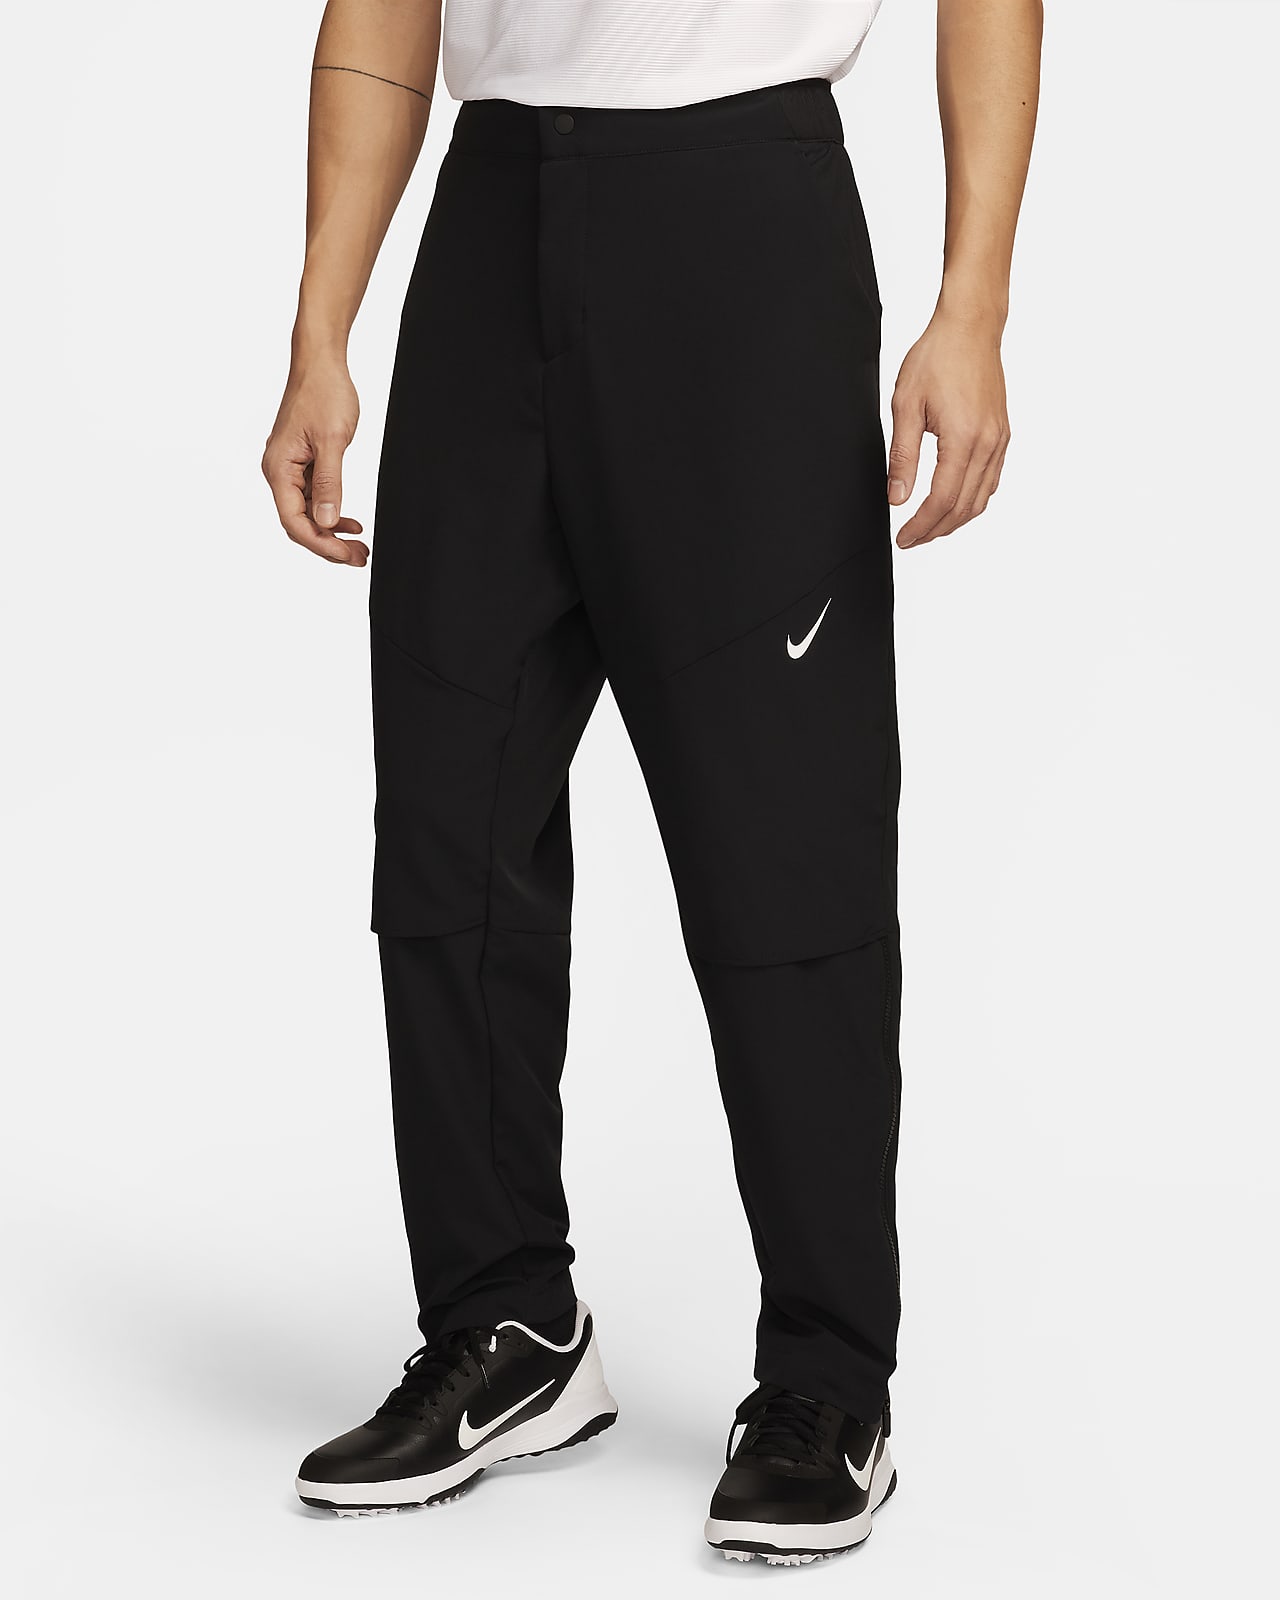 Pants de golf Dri-FIT para hombre Nike Golf Club